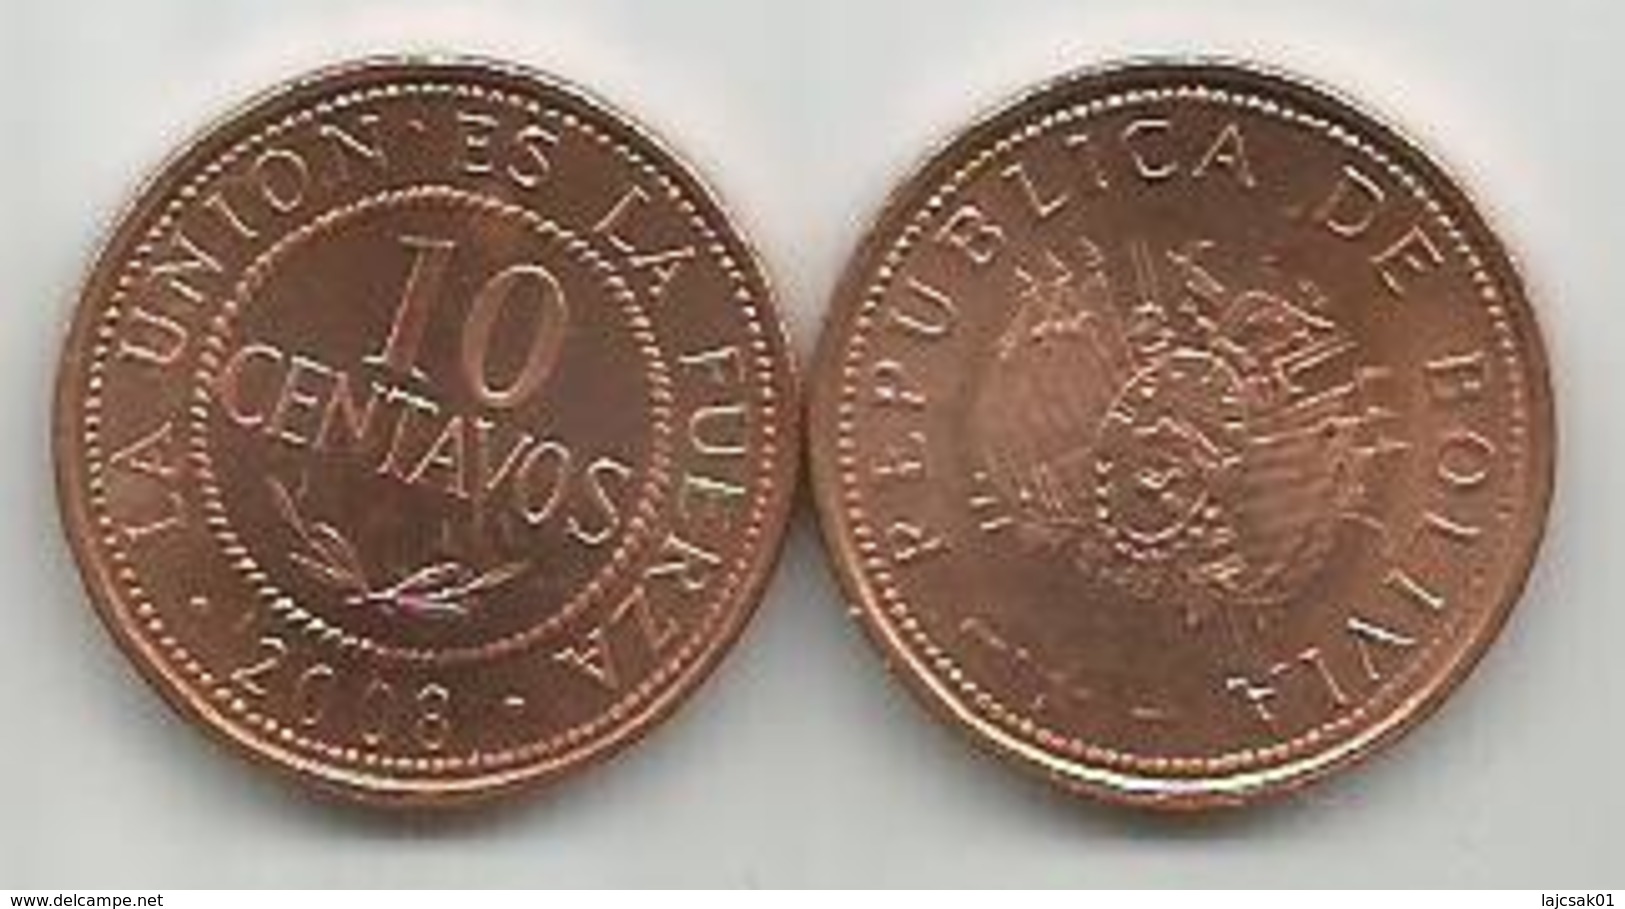 Bolivia 10 Centavos  2008. High Grade - Bolivia